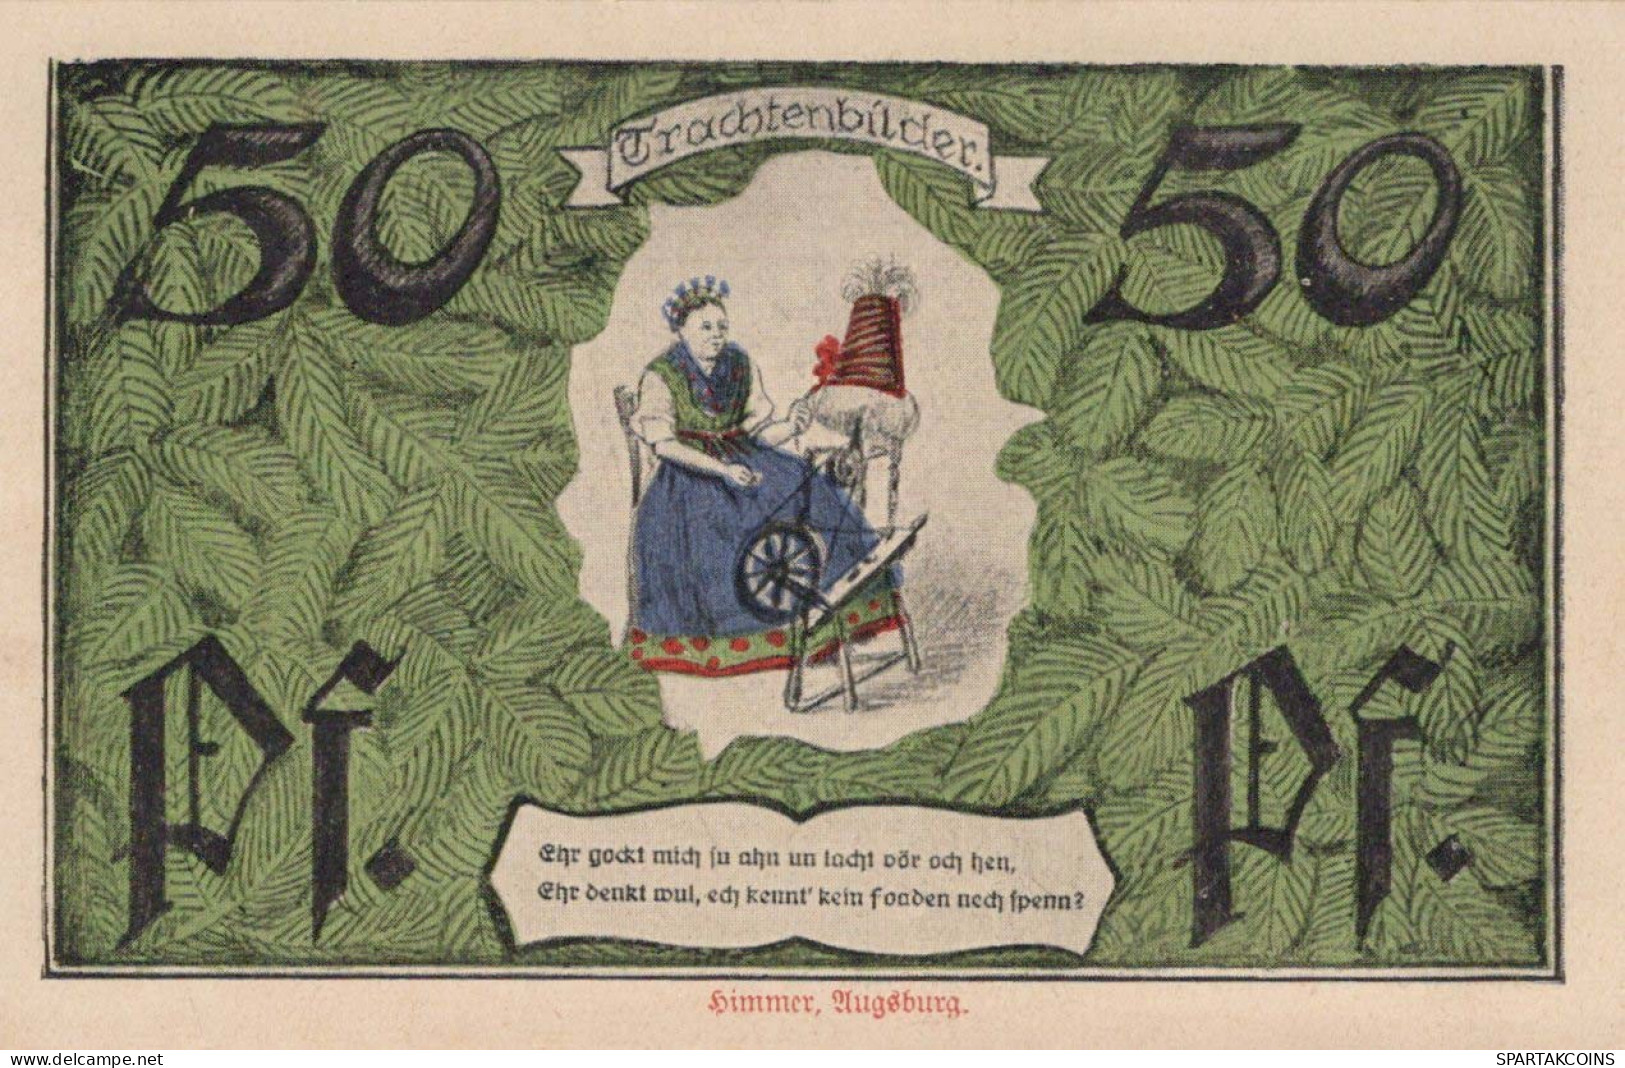 50 PFENNIG 1921 Stadt ERFURT Saxony UNC DEUTSCHLAND Notgeld Banknote #PB318 - Lokale Ausgaben